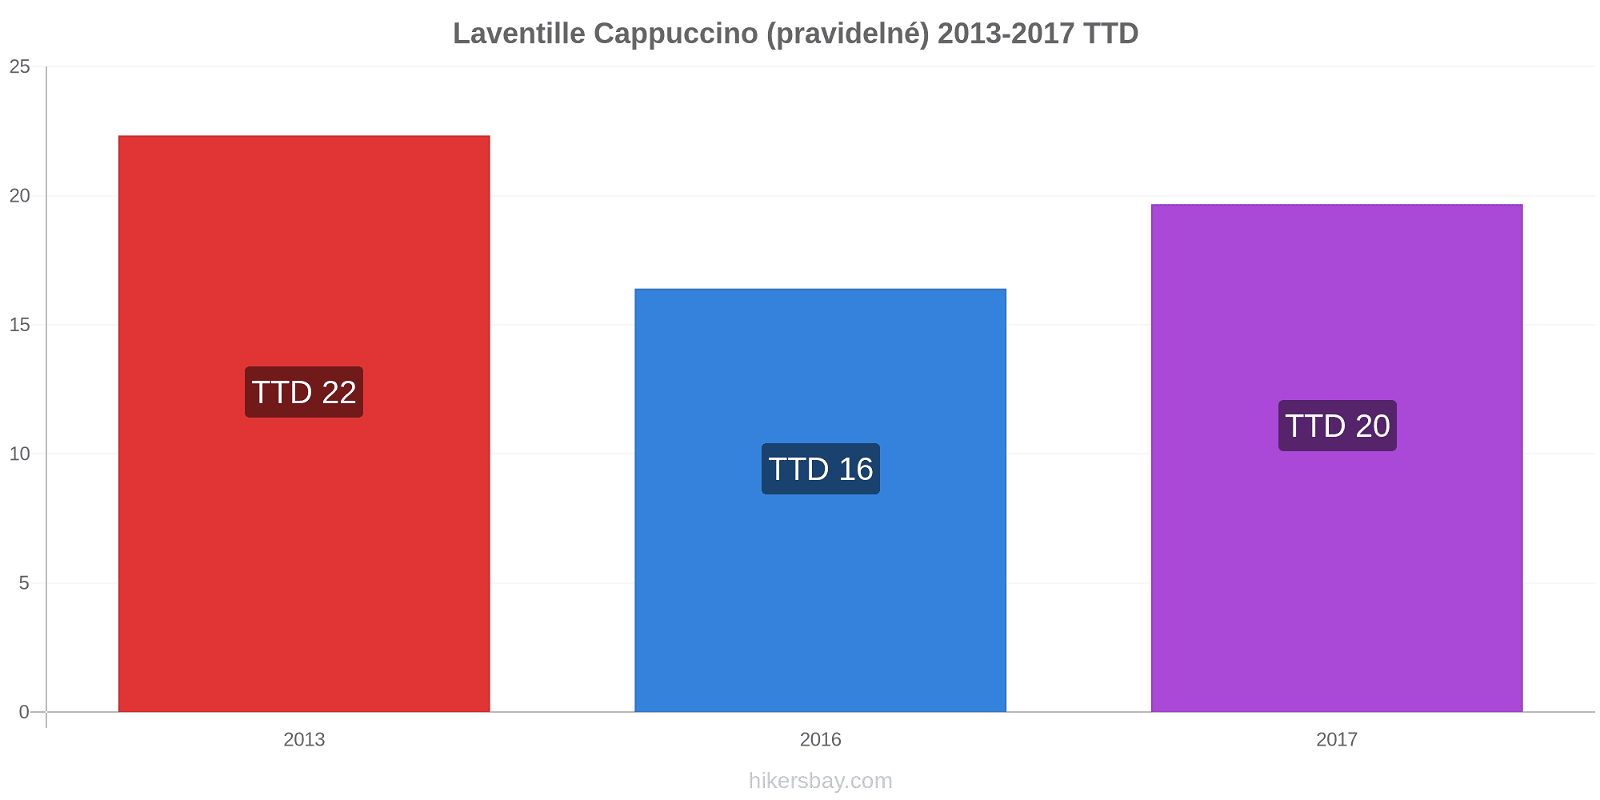 Laventille změny cen Cappuccino (pravidelné) hikersbay.com